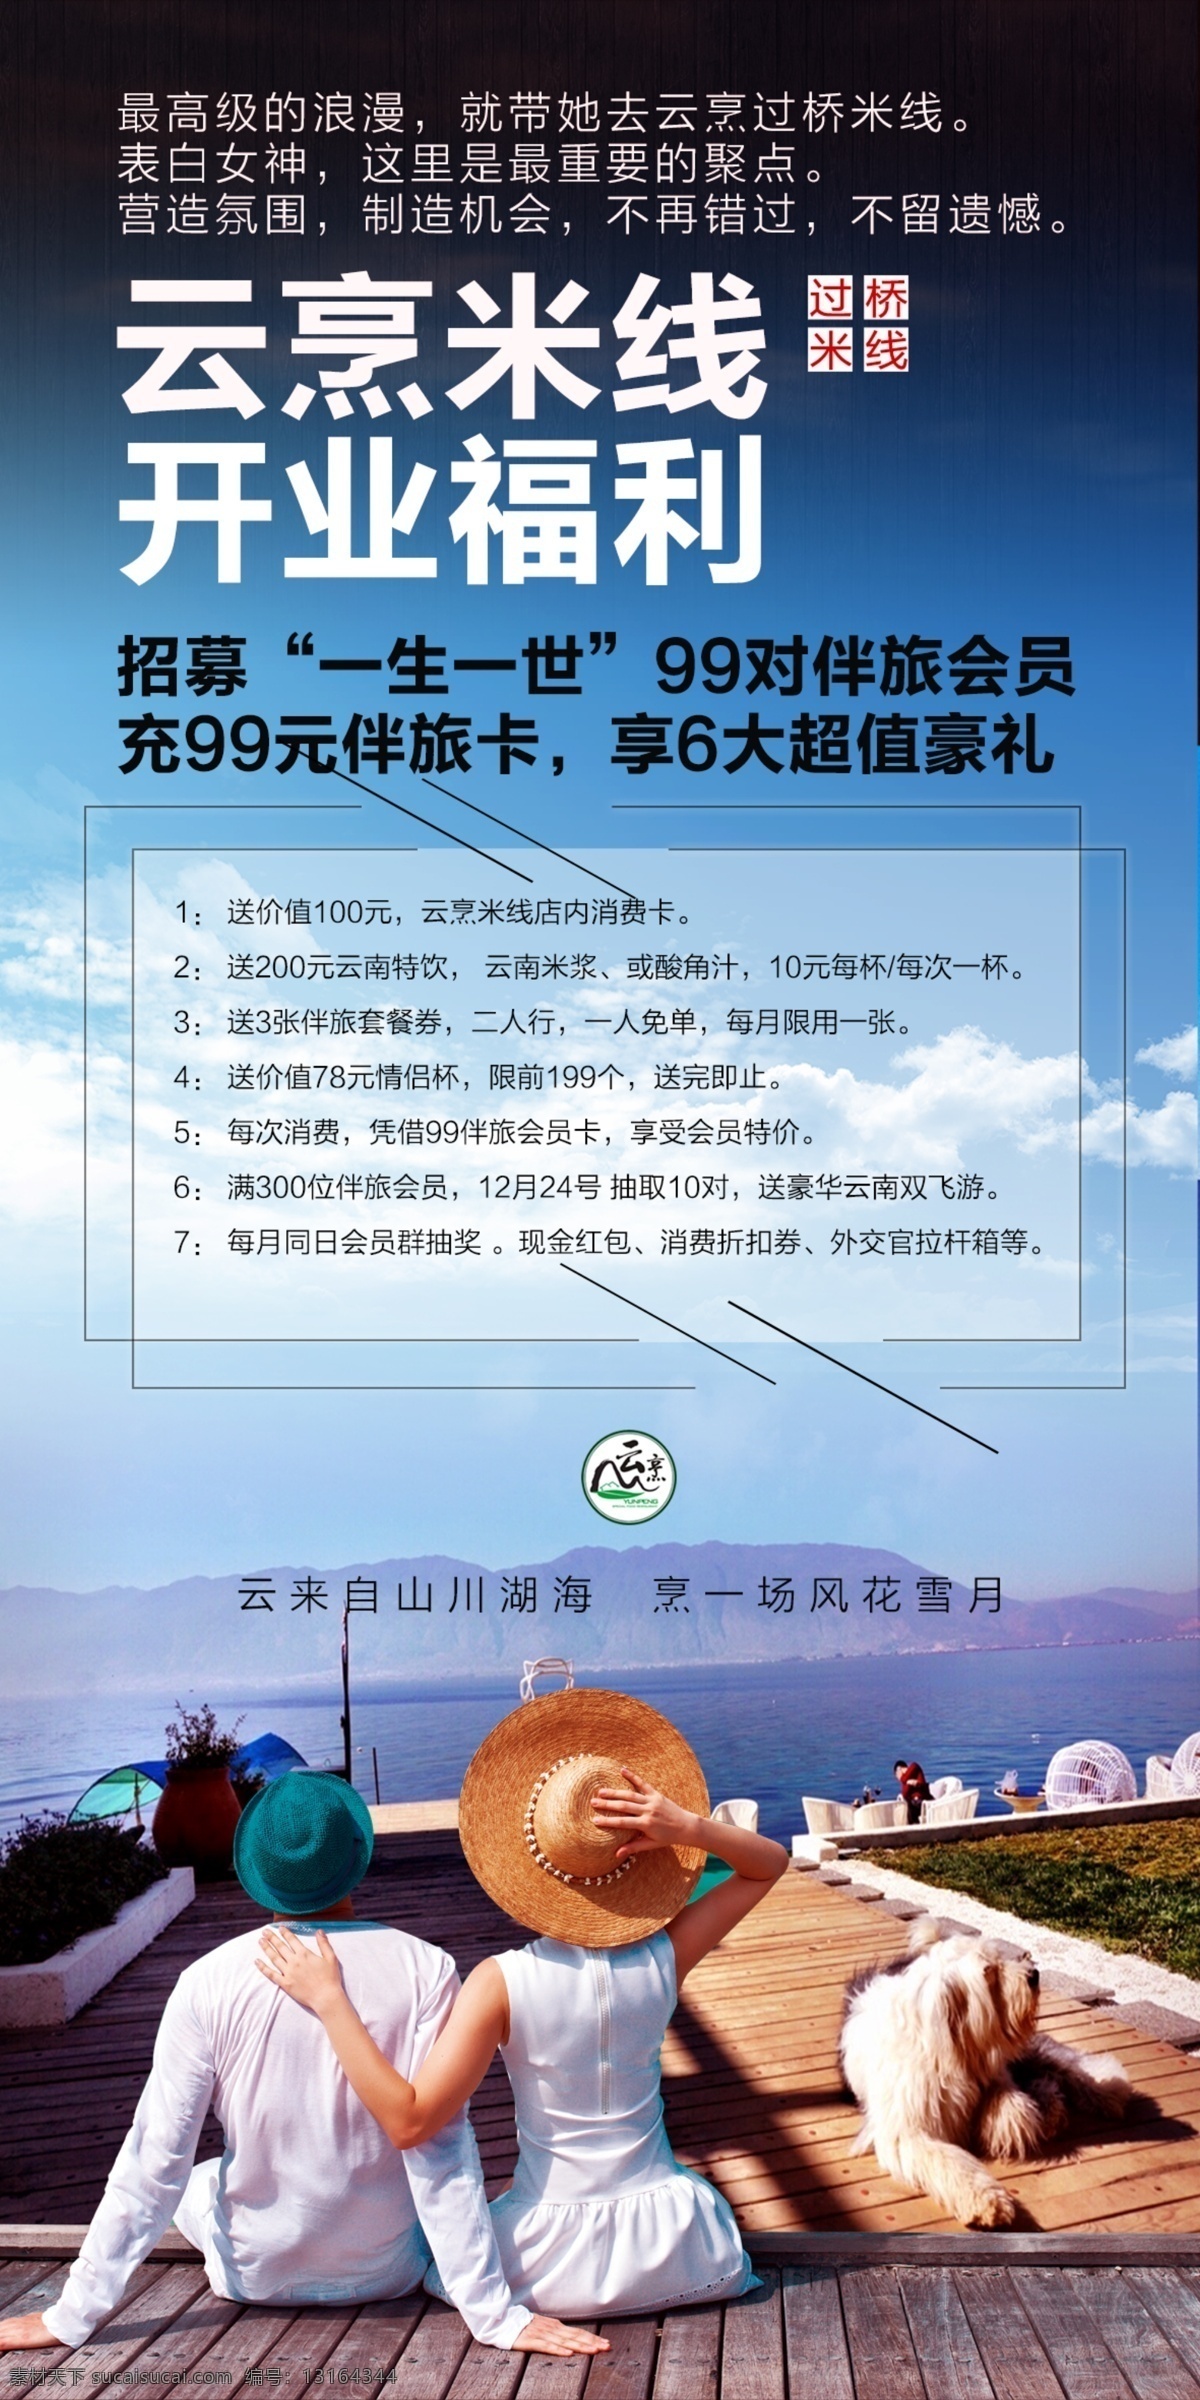 云 烹 米线 台卡 正面 云南 开业庆典 促销活动 海报